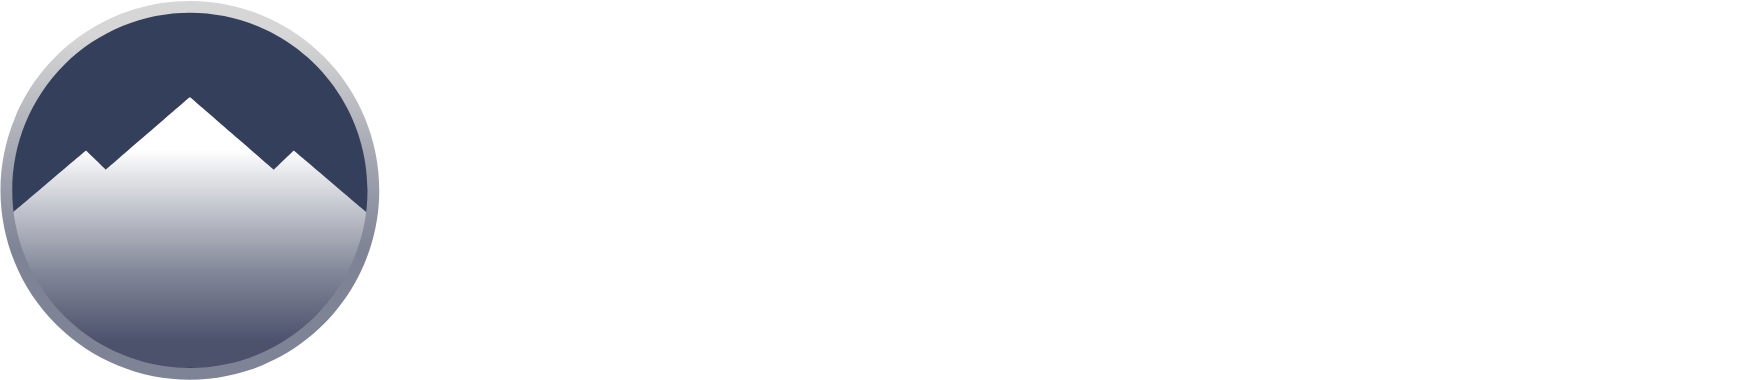 Summit Hotel Properties Logo groß für dunkle Hintergründe (transparentes PNG)